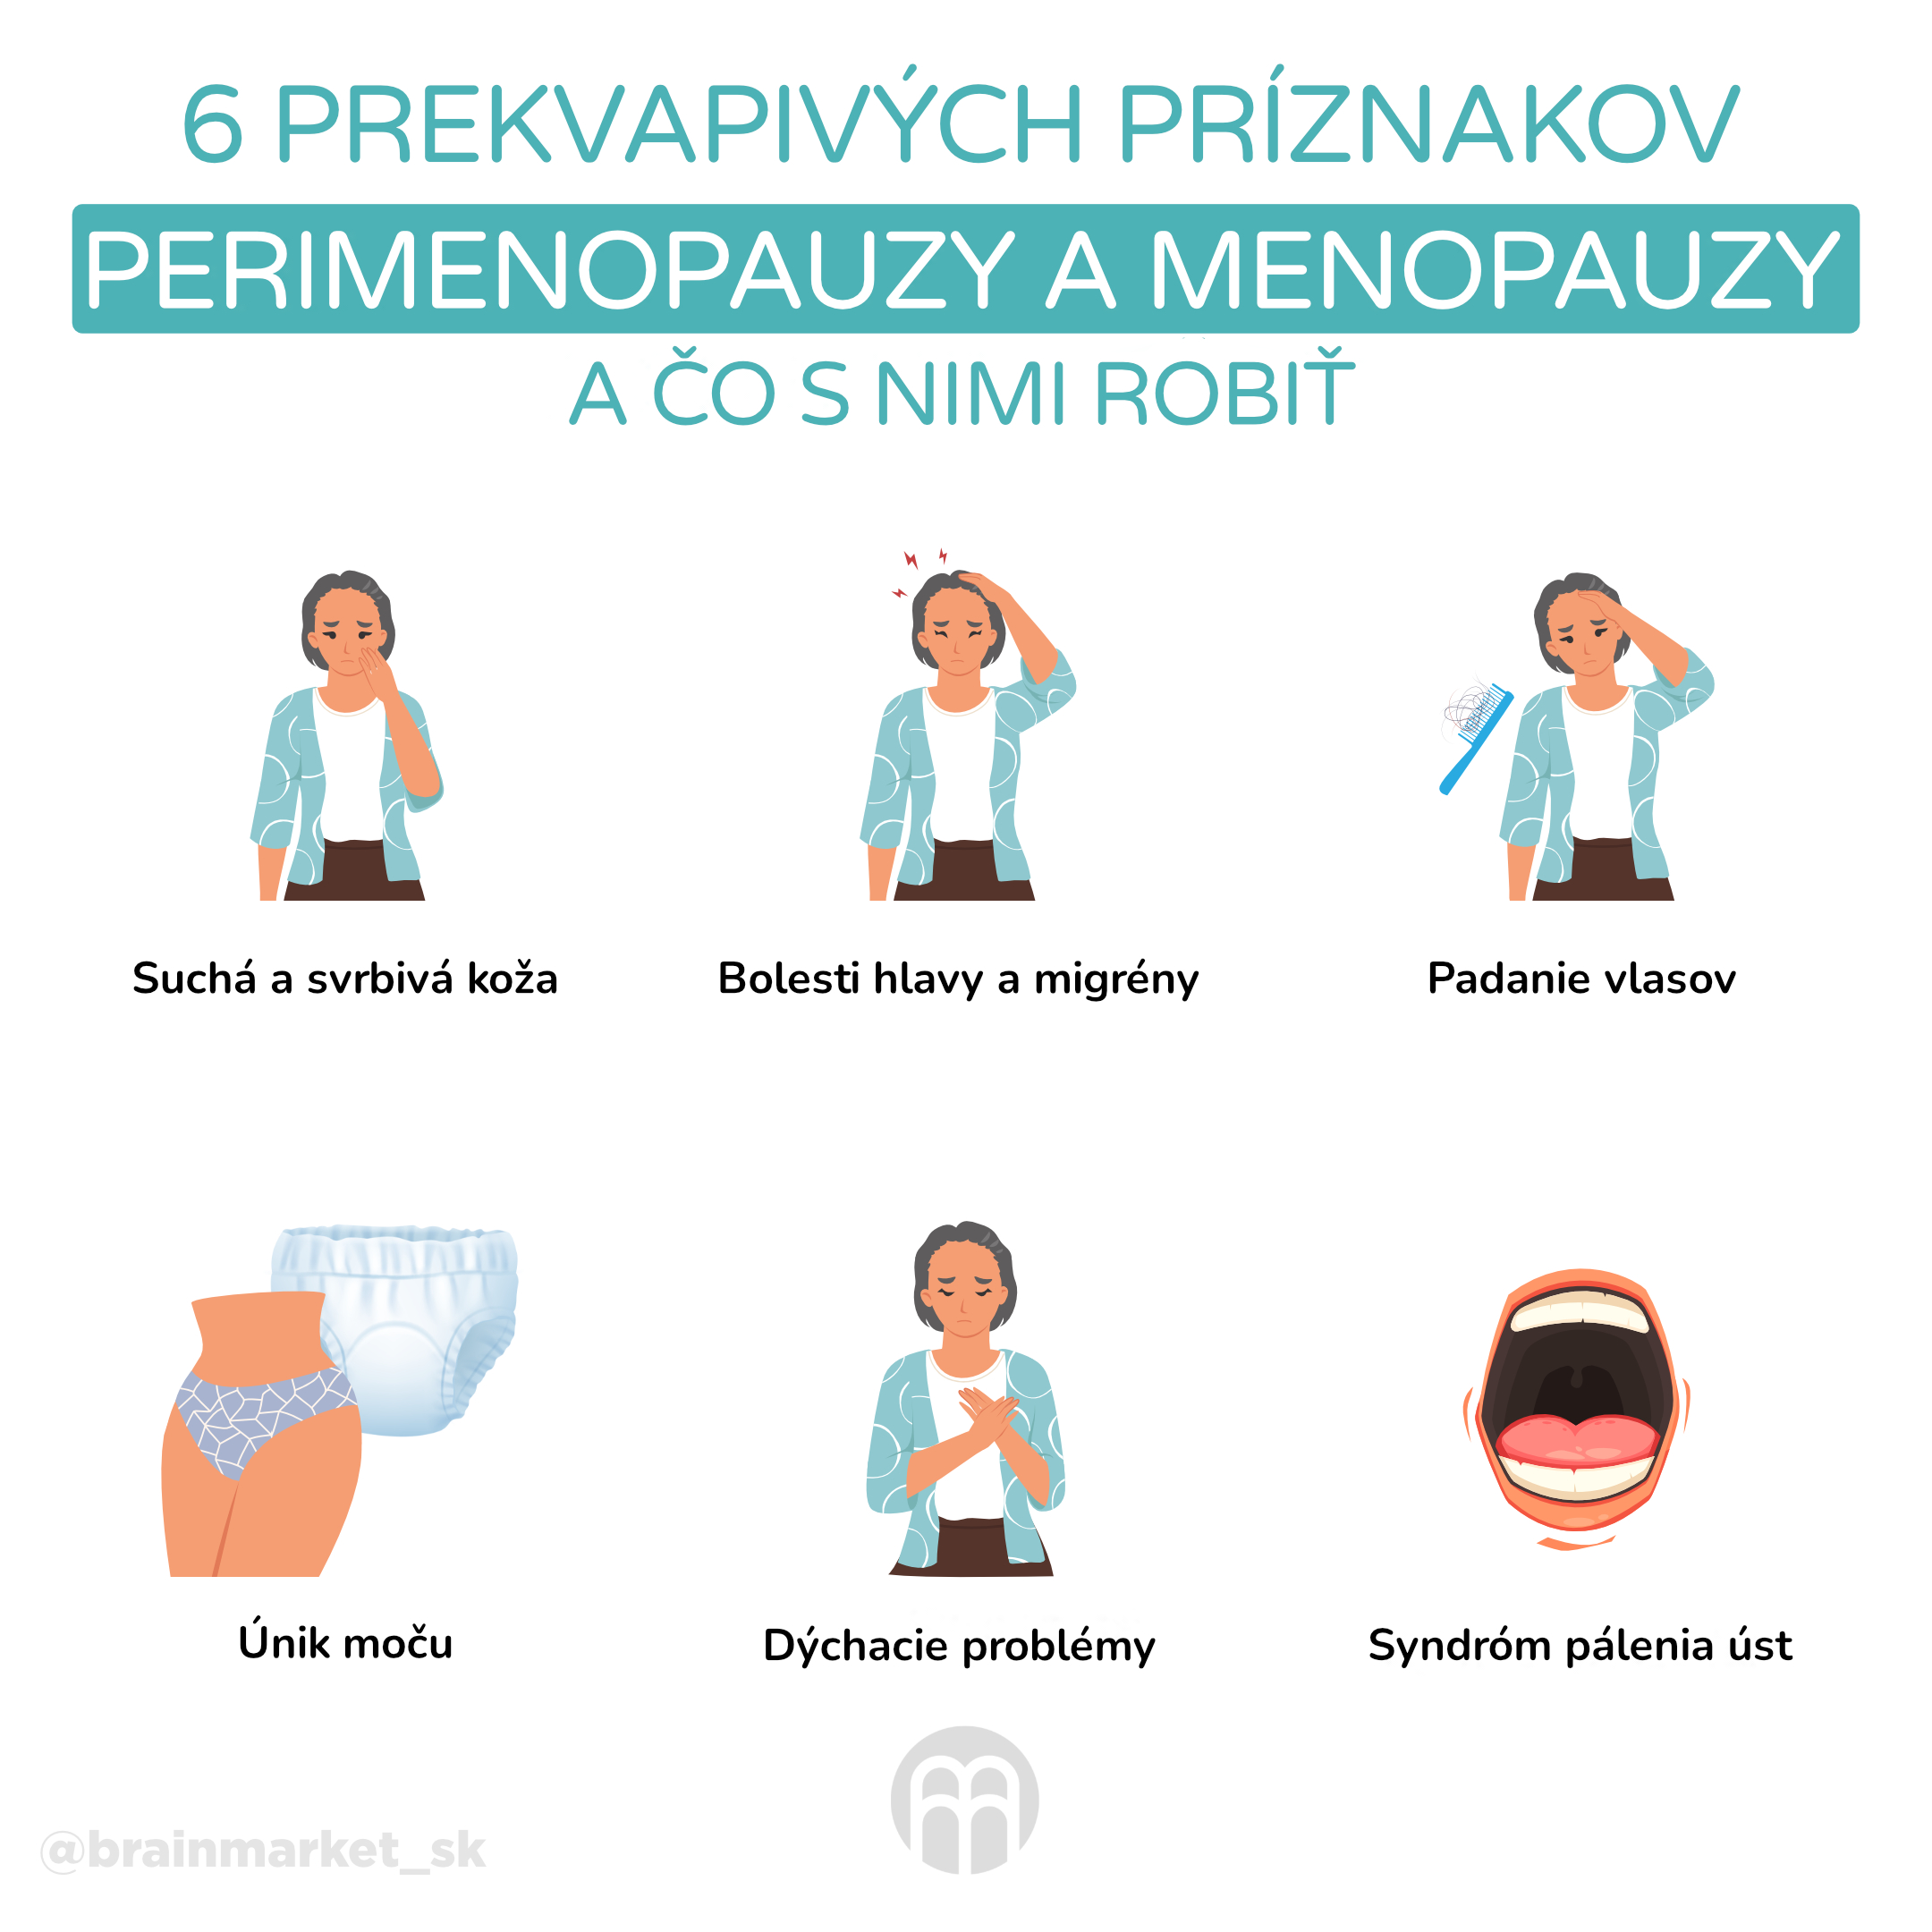 6 príznakov premenopauzy a menopauzy_infografika_cz